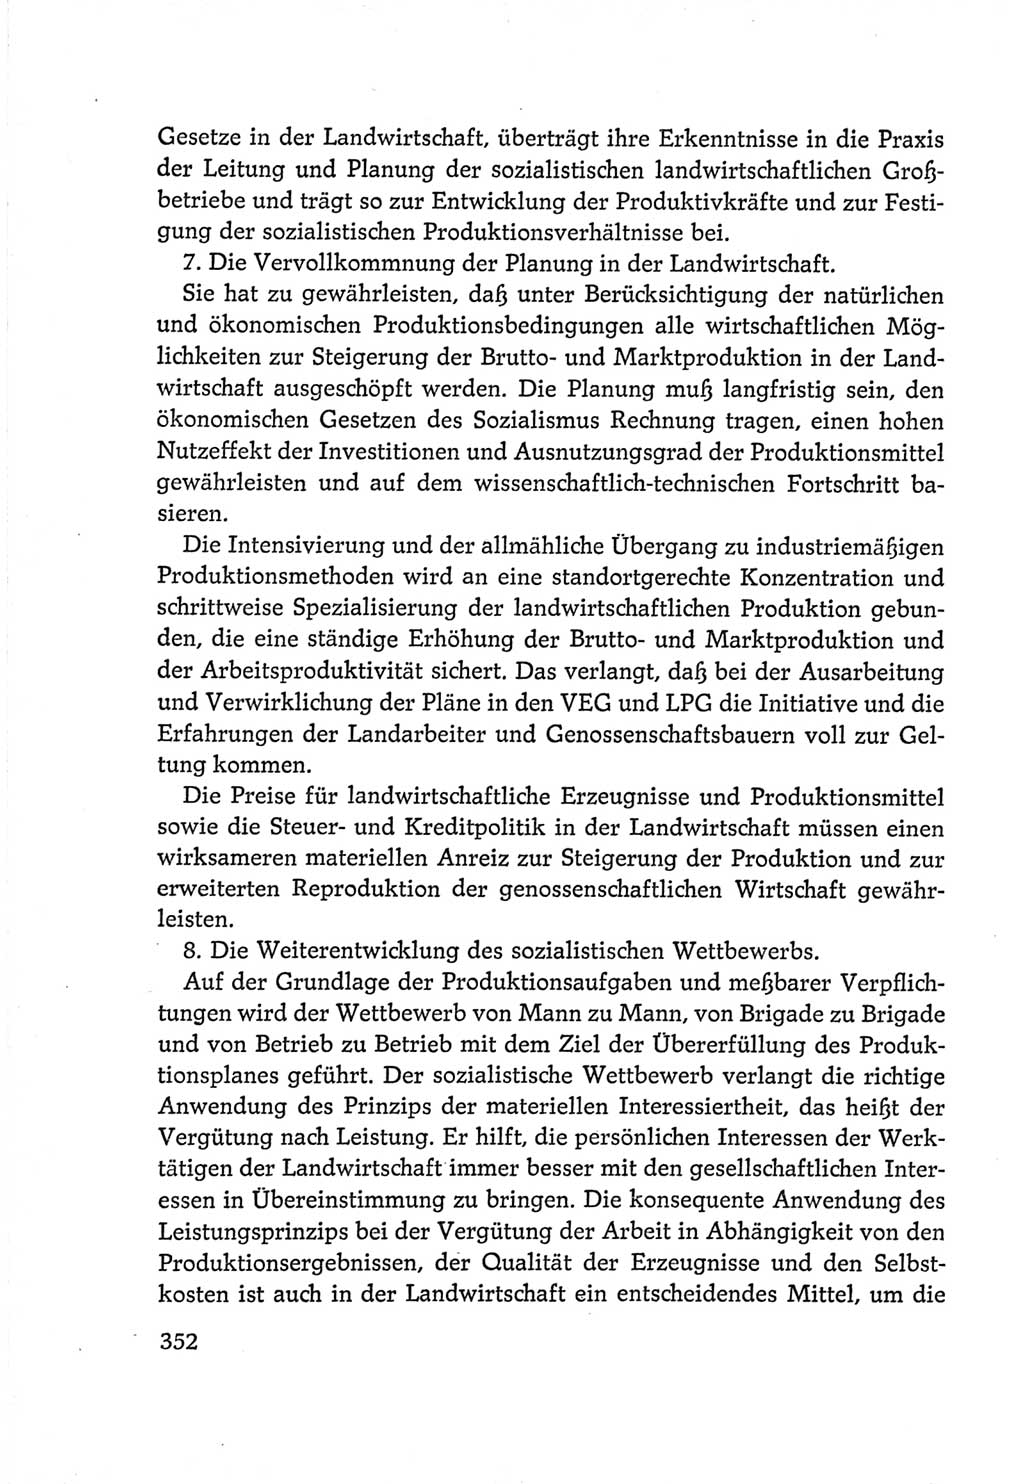 Protokoll der Verhandlungen des Ⅵ. Parteitages der Sozialistischen Einheitspartei Deutschlands (SED) [Deutsche Demokratische Republik (DDR)] 1963, Band Ⅳ, Seite 352 (Prot. Verh. Ⅵ. PT SED DDR 1963, Bd. Ⅳ, S. 352)